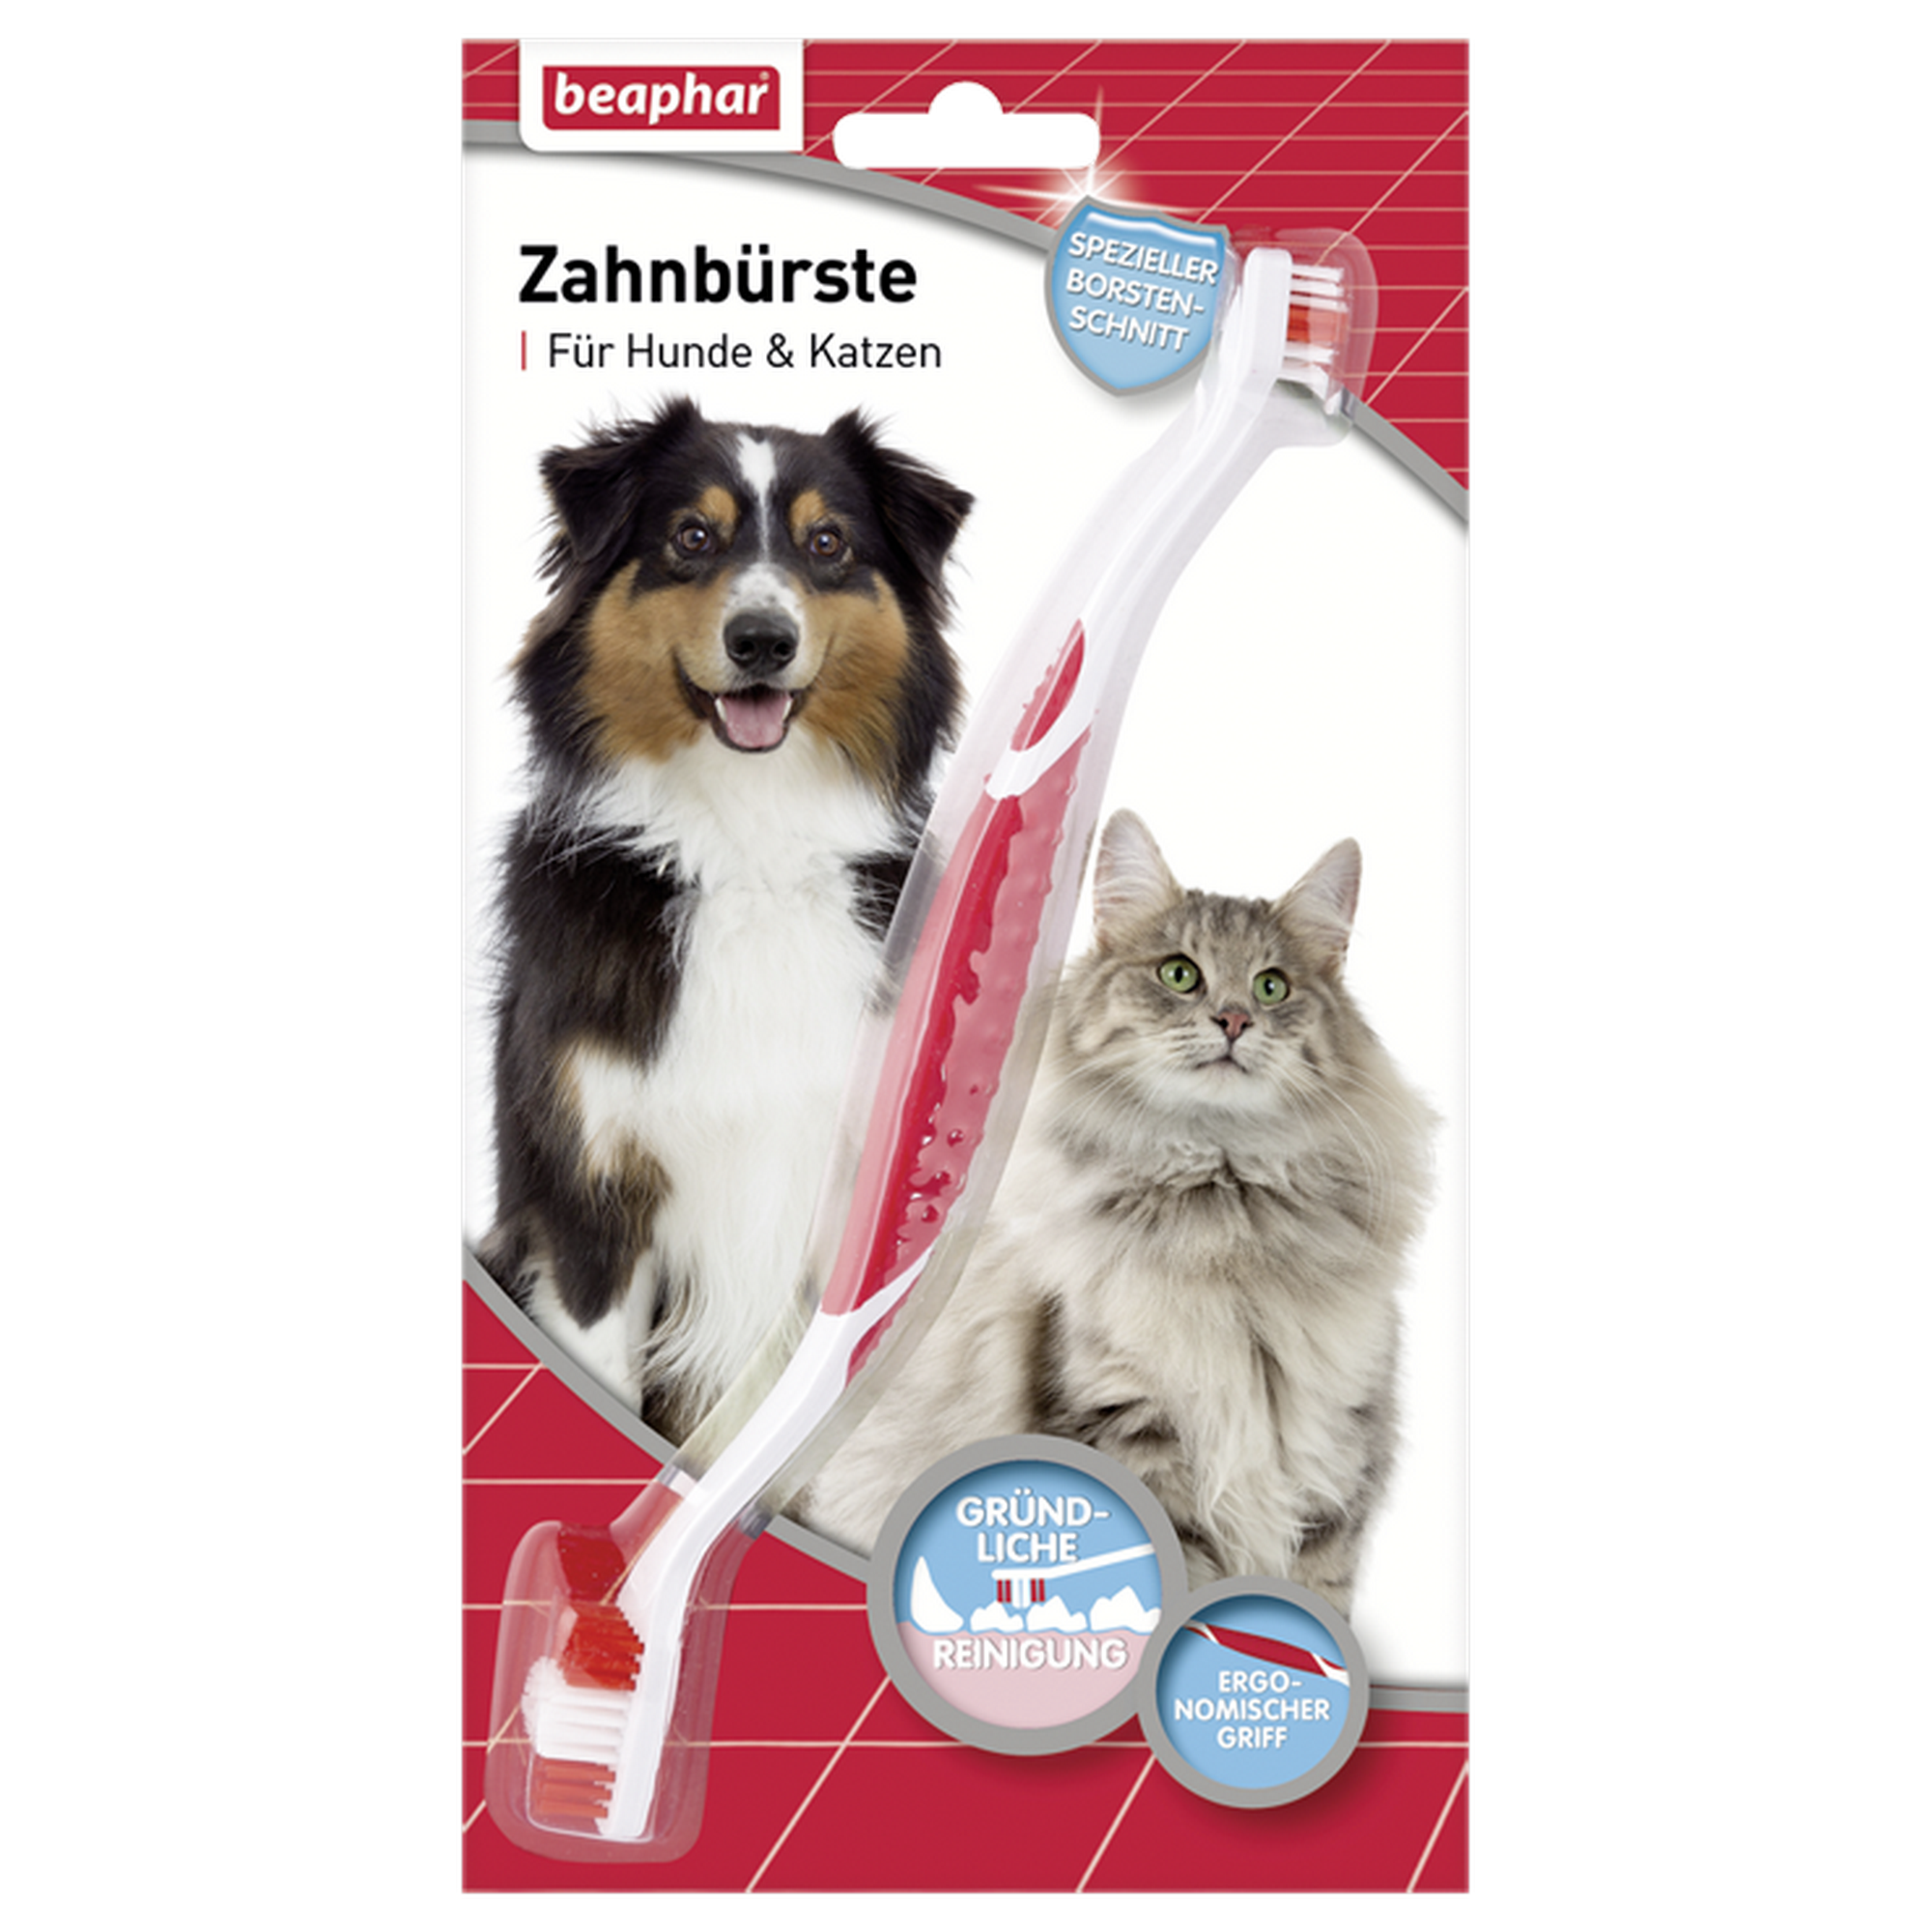 Zahnbürste für Hunde und Katzen + product picture